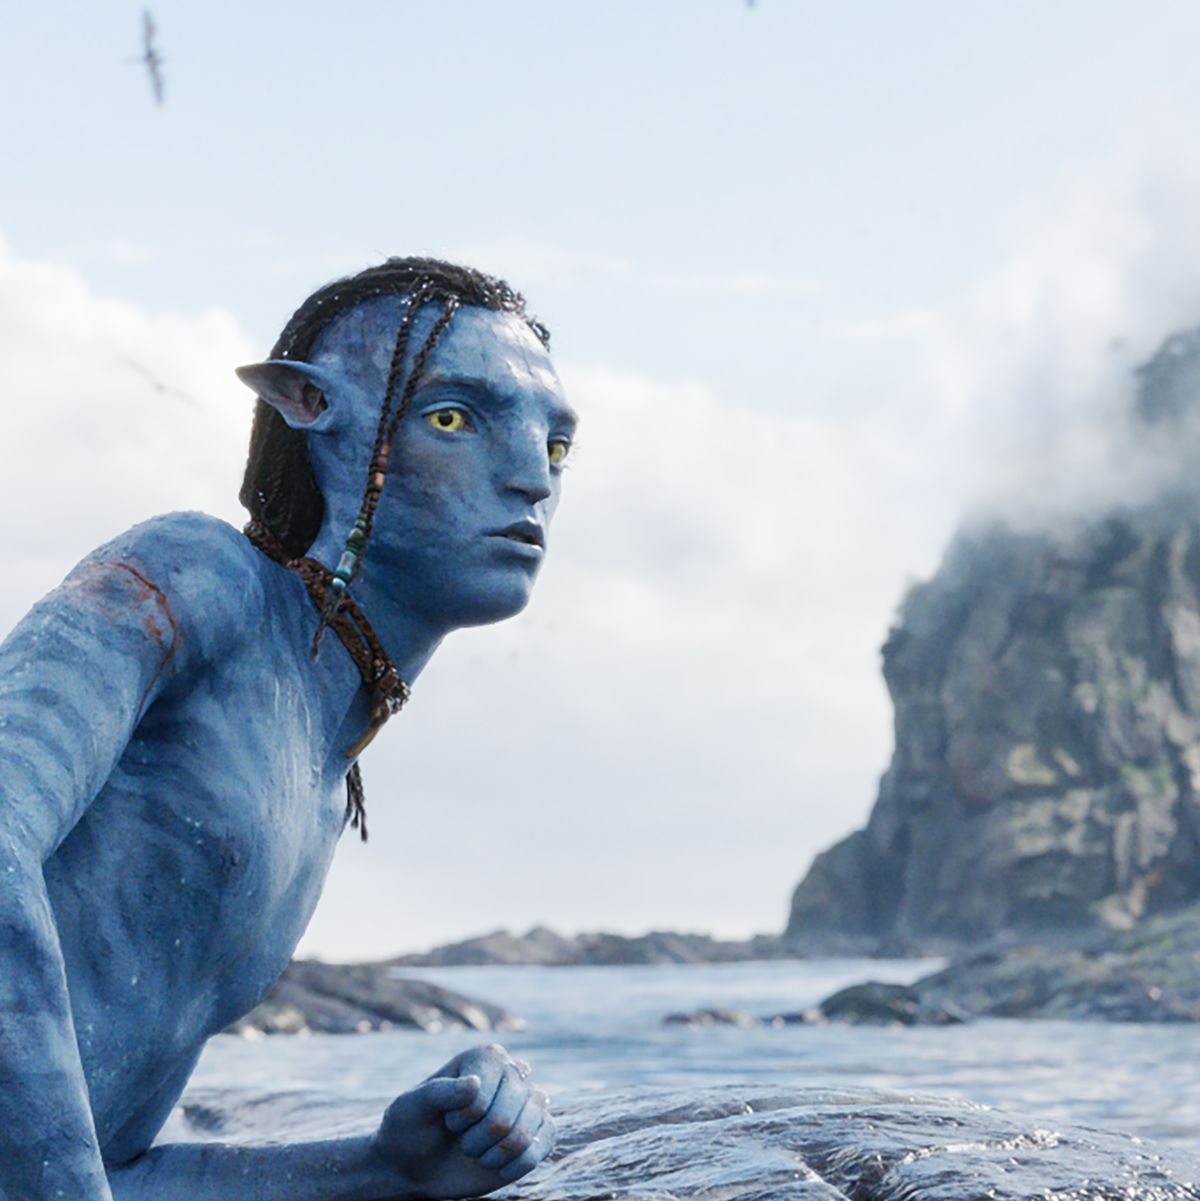 Bạn không cần phải đợi đến khi bộ phim Avatar 2 ra rạp để xem. Disney Plus sẽ ra mắt bộ phim vào năm 2024 ngay sau khi phim ra rạp. Khán giả toàn cầu sẽ có cơ hội thưởng thức bộ phim này một cách tiện lợi và đơn giản chỉ với một tài khoản Disney Plus. Bạn có sẵn sàng để xem những cảnh quay kỳ diệu của Pandora không?